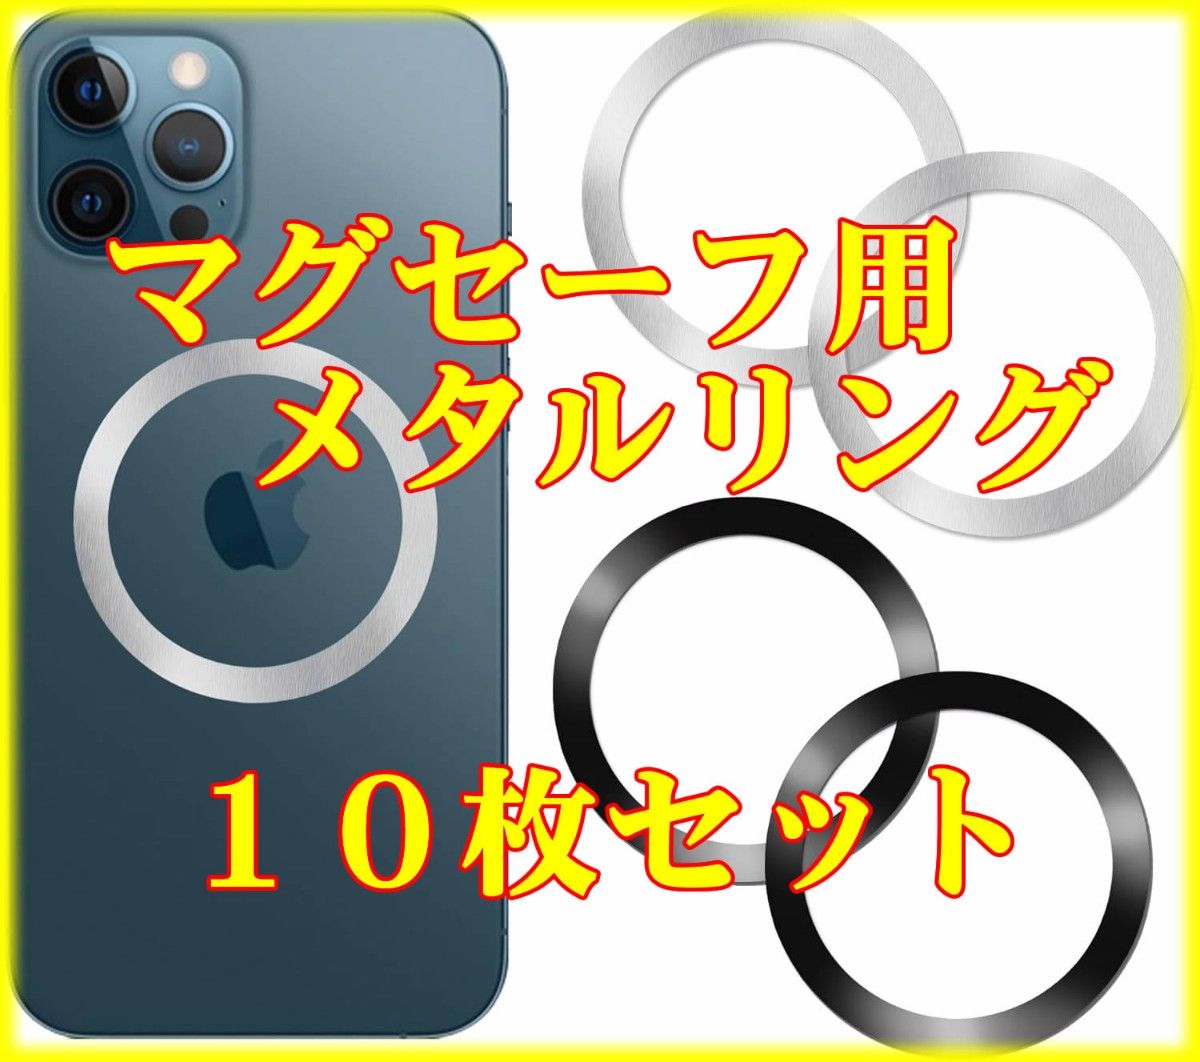 [10枚] 黒 ブラック メタルリング Magsafe マグセーフ Qi iphone ワイヤレス充電 充電 マグネット